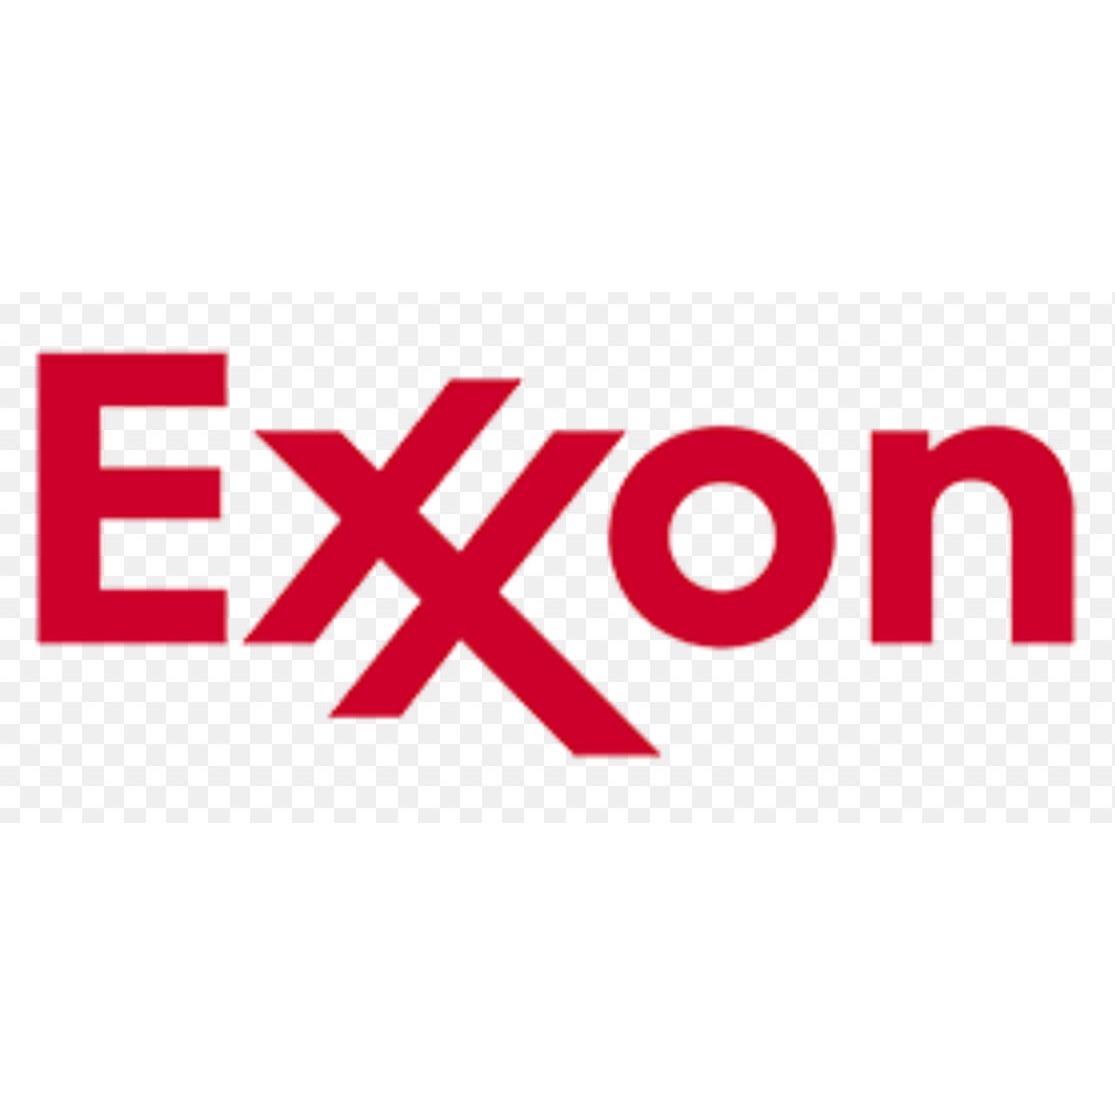 Exxon Photo